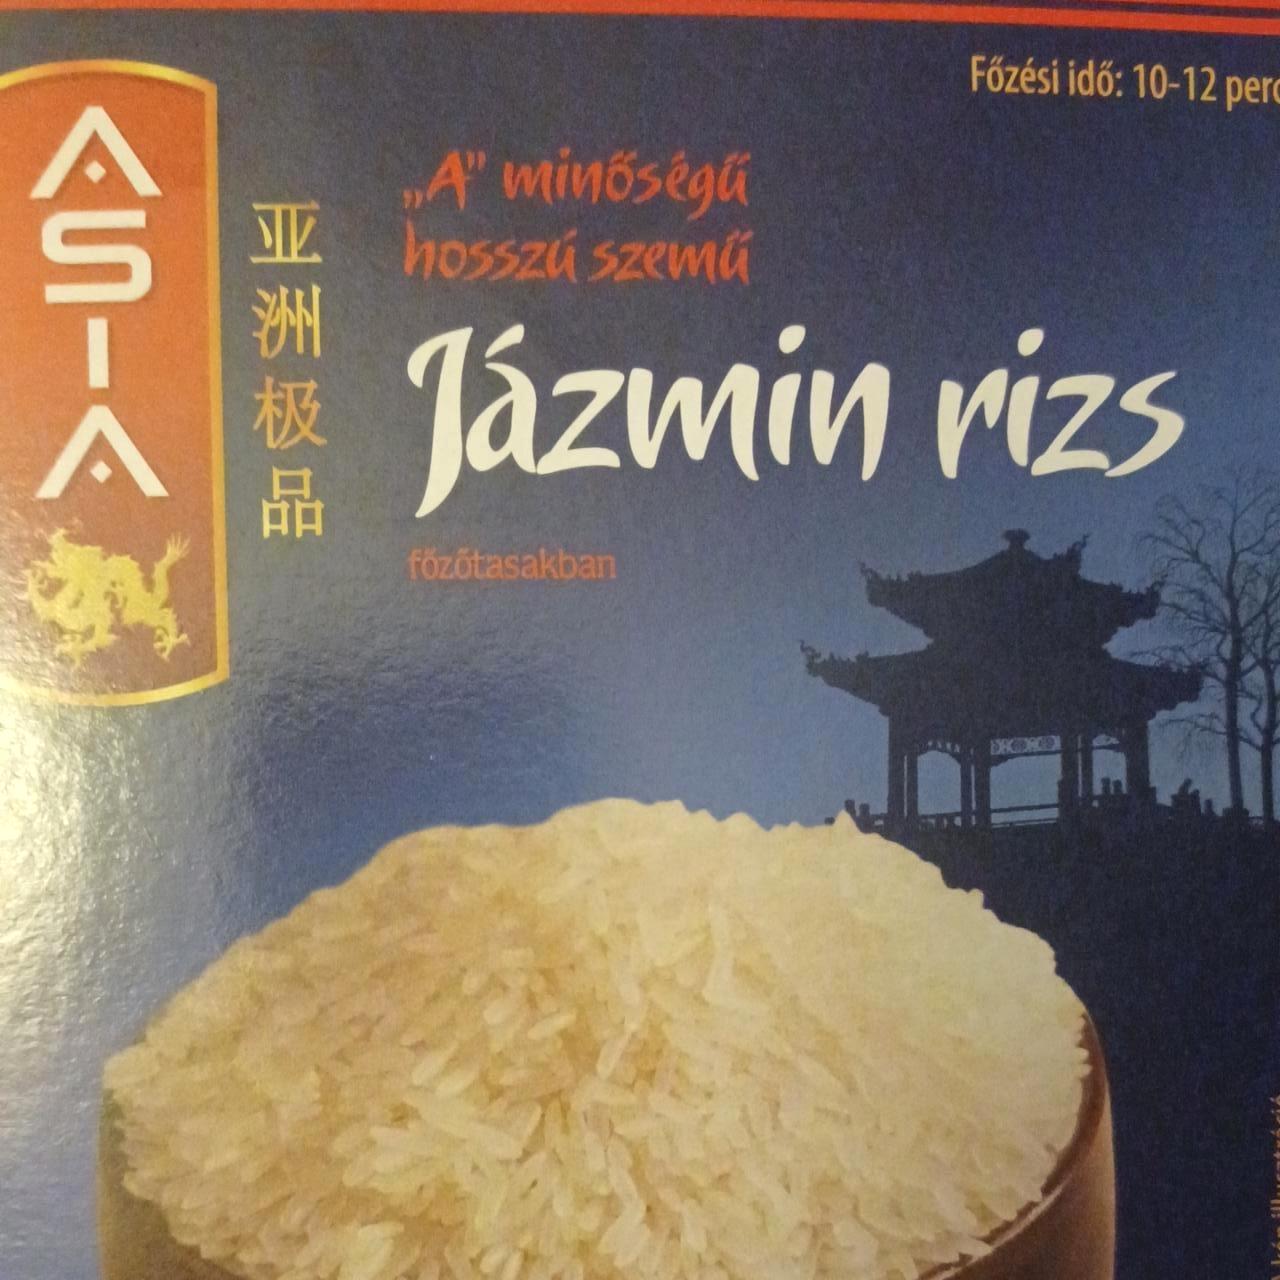 Képek - Jázmin rizs főzőtasakban Asia